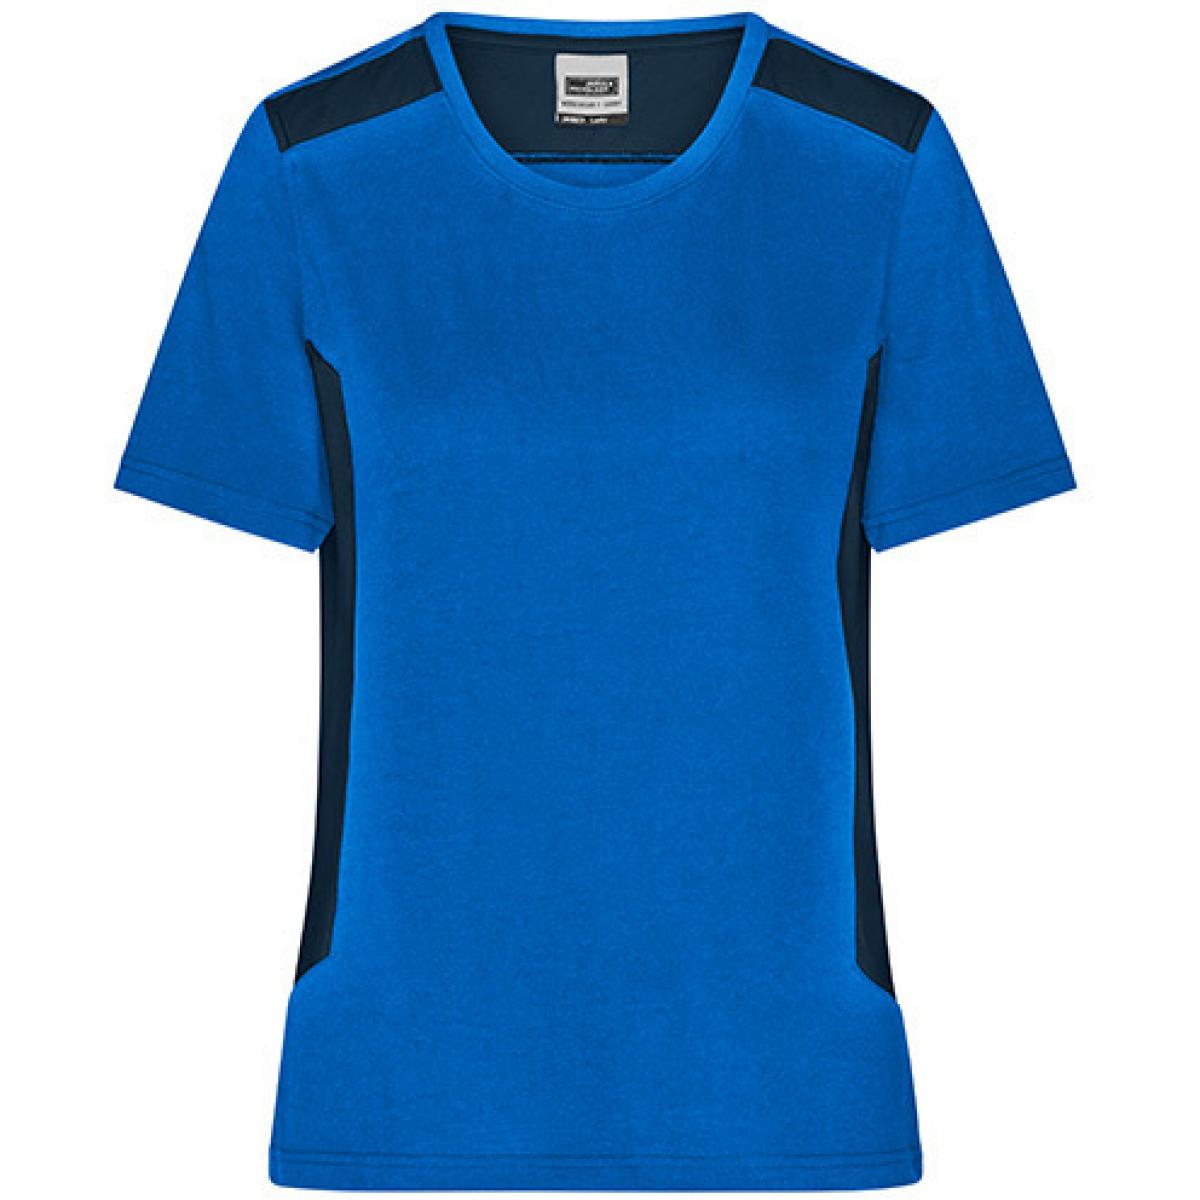 Hersteller: James+Nicholson Herstellernummer: JN1823 Artikelbezeichnung: Damen T, Ladies‘ Workwear T-Shirt -STRONG- Waschbar bis 60 ° Farbe: Royal/Navy